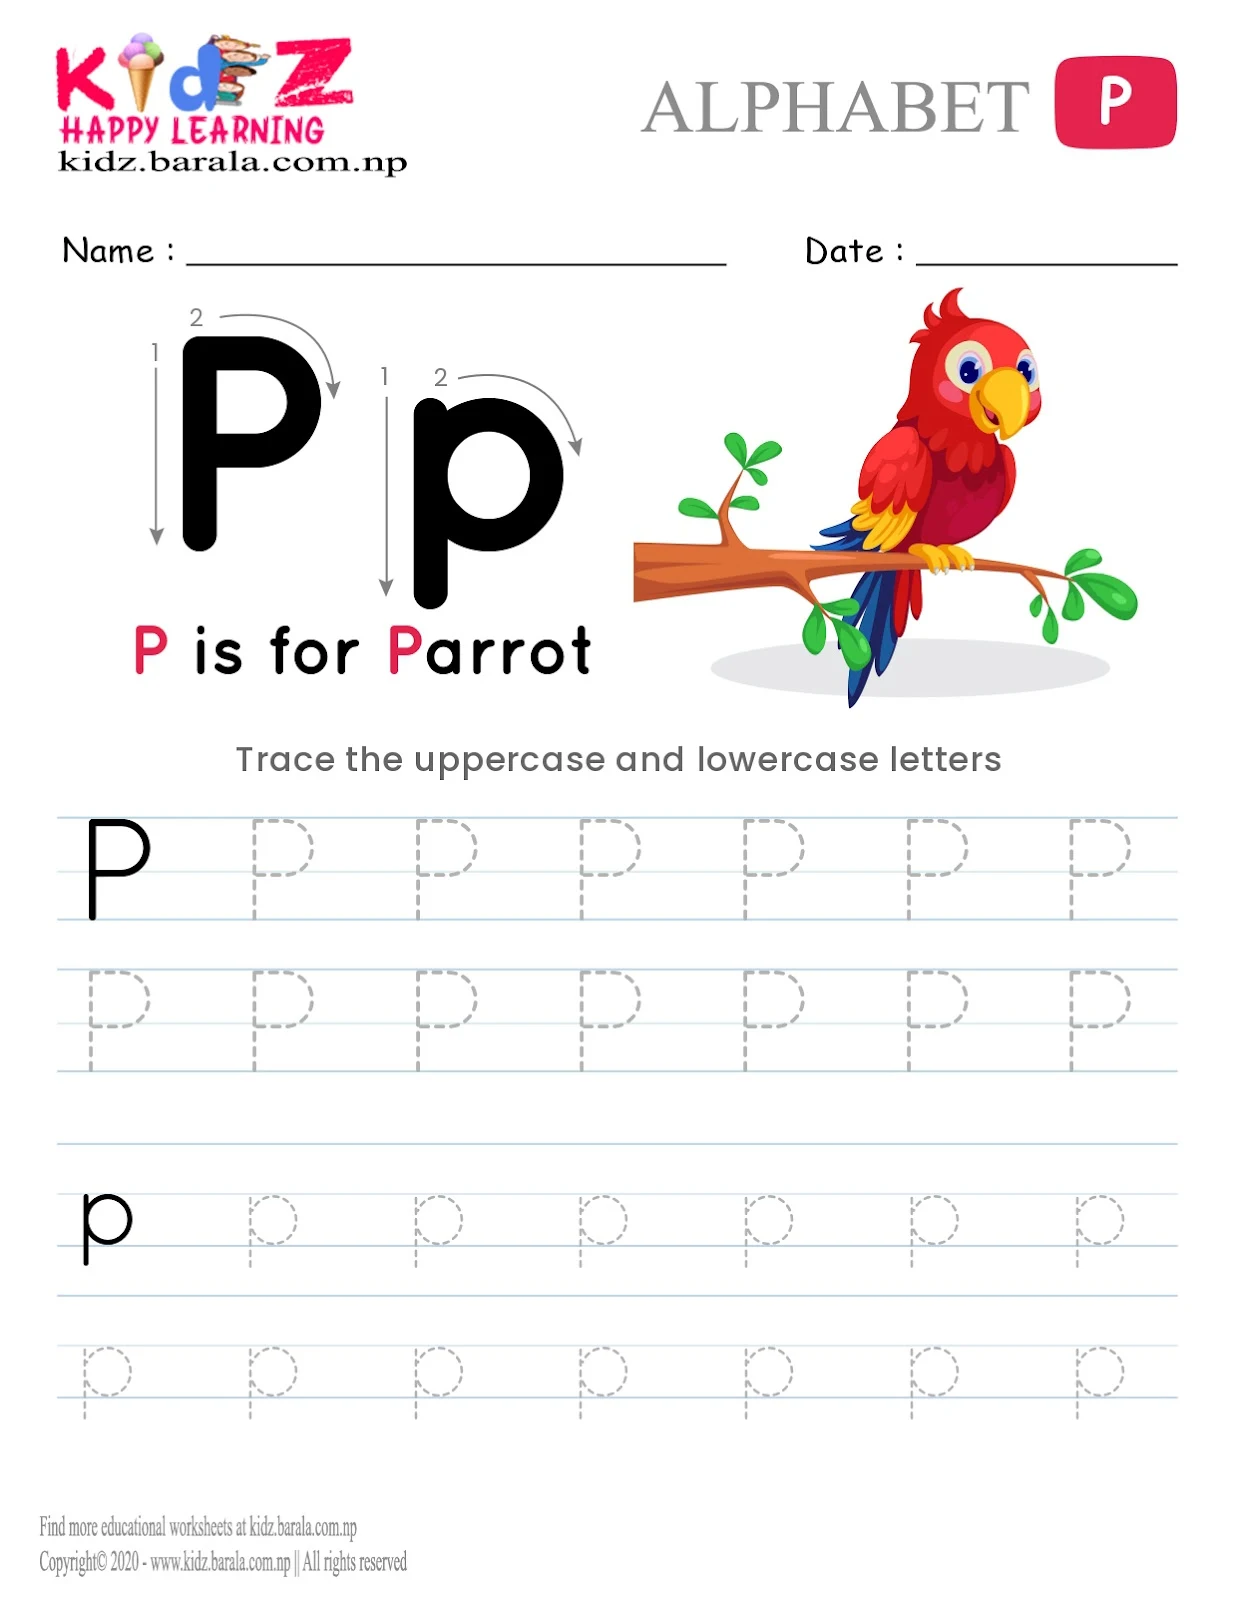 Alphabet P tracing worksheet free download .pdf